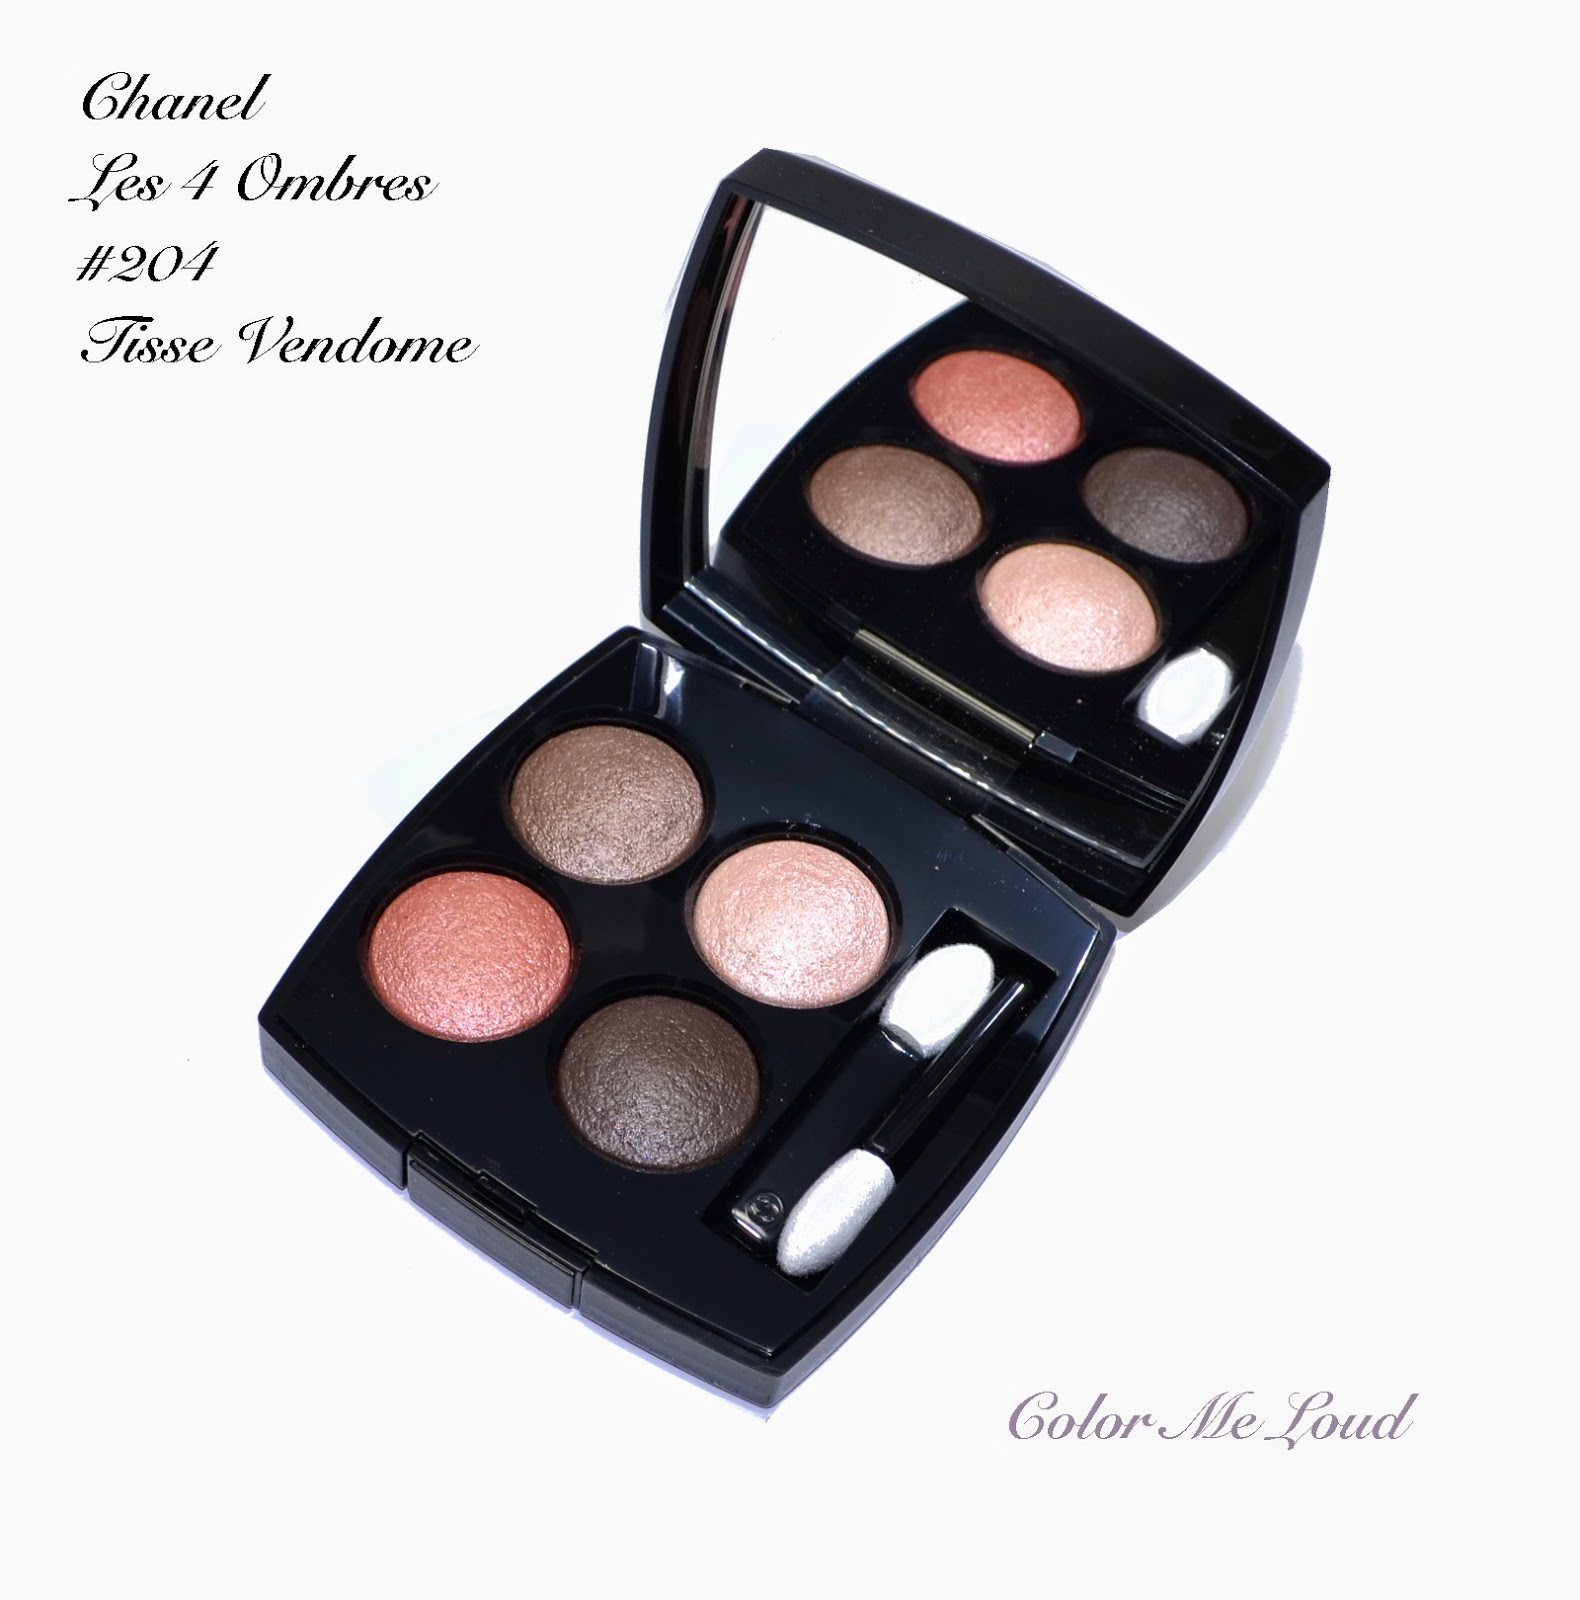 Chanel Les 4 Ombres #204 Tissé Vendôme, Review, Swatches & FOTD